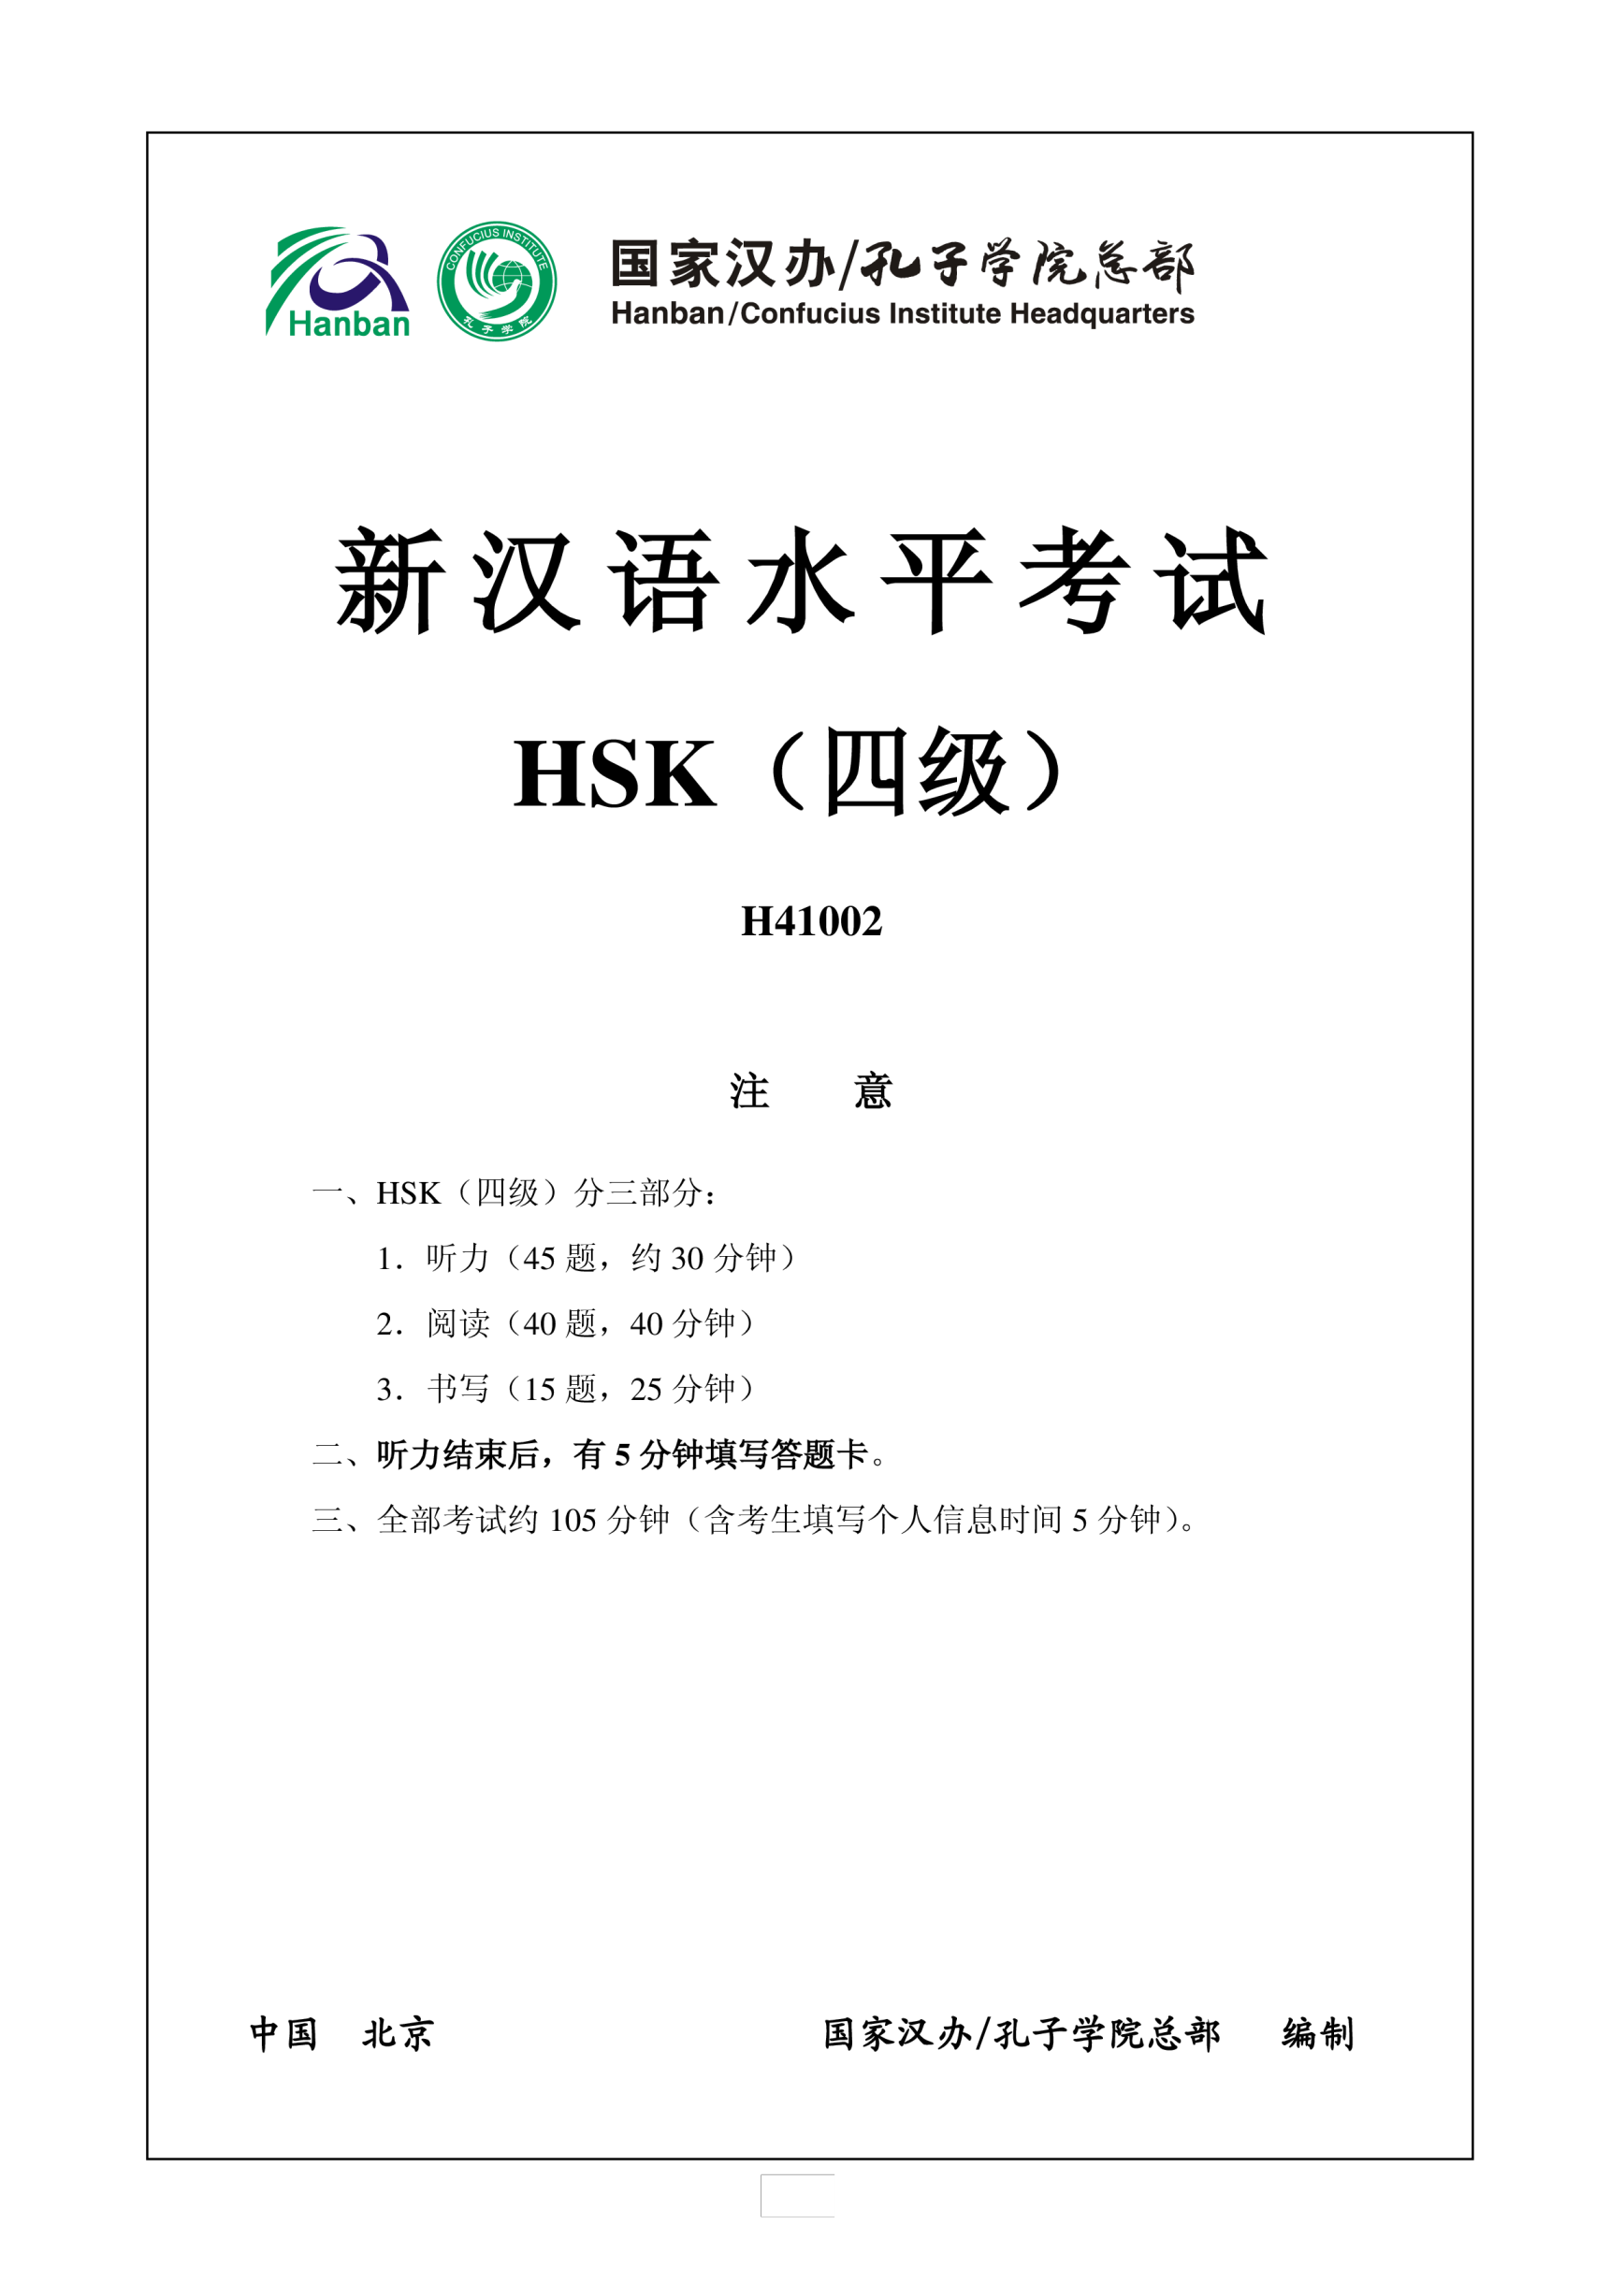 Vorschaubild der VorlageHSK4 Chinese Exam including Answers # HSK H41002